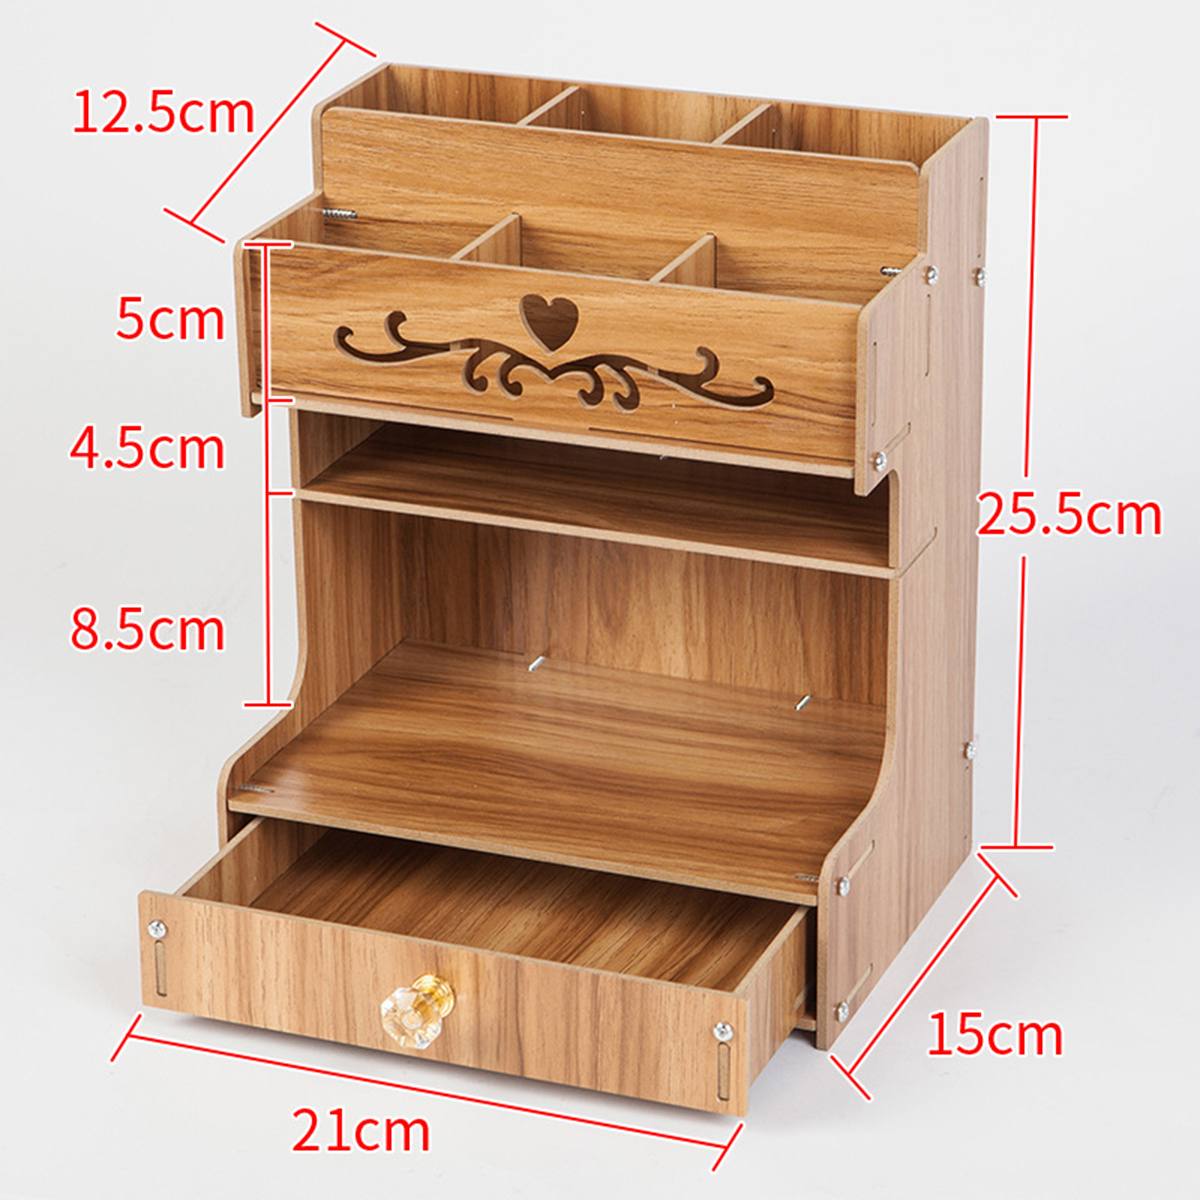 Wooden-Desk-Organizer-Multi-Functional-DIY-Pen-Holder-Box-Cell-Phone-Holder-Desktop-Stationary-Home--1585522-10